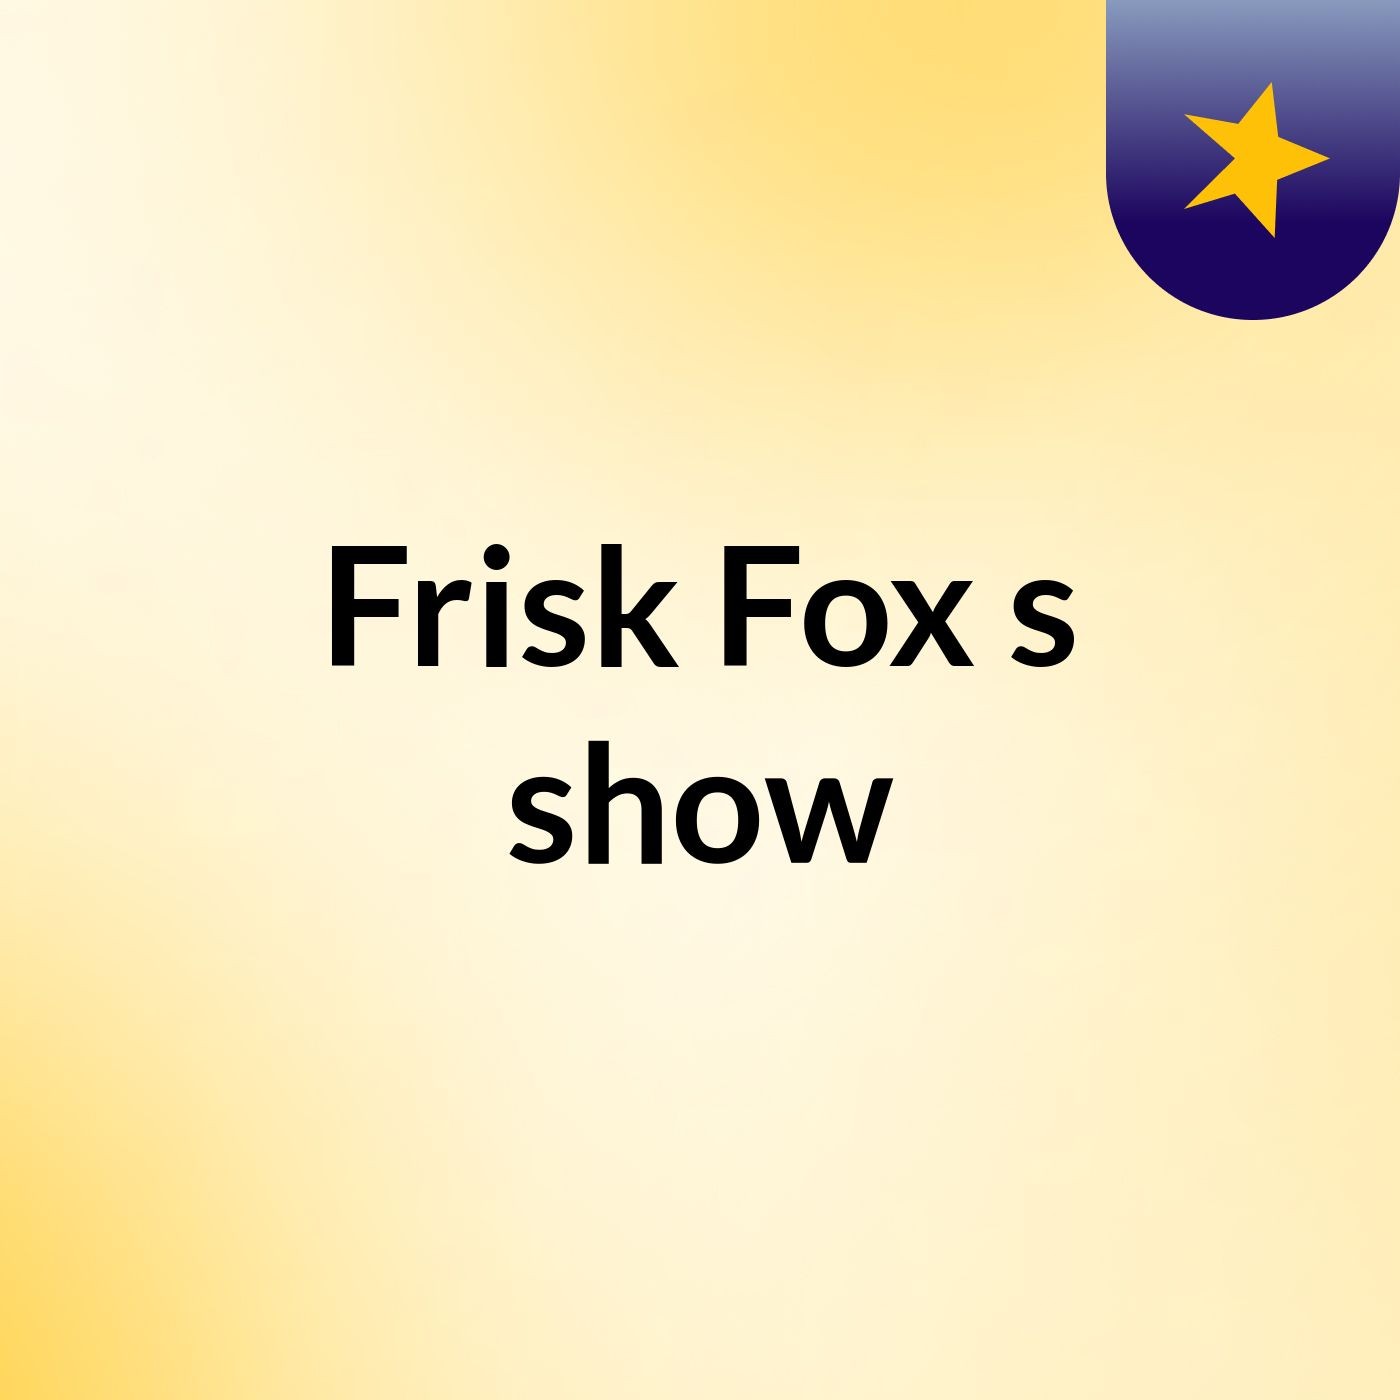 Frisk Fox's show